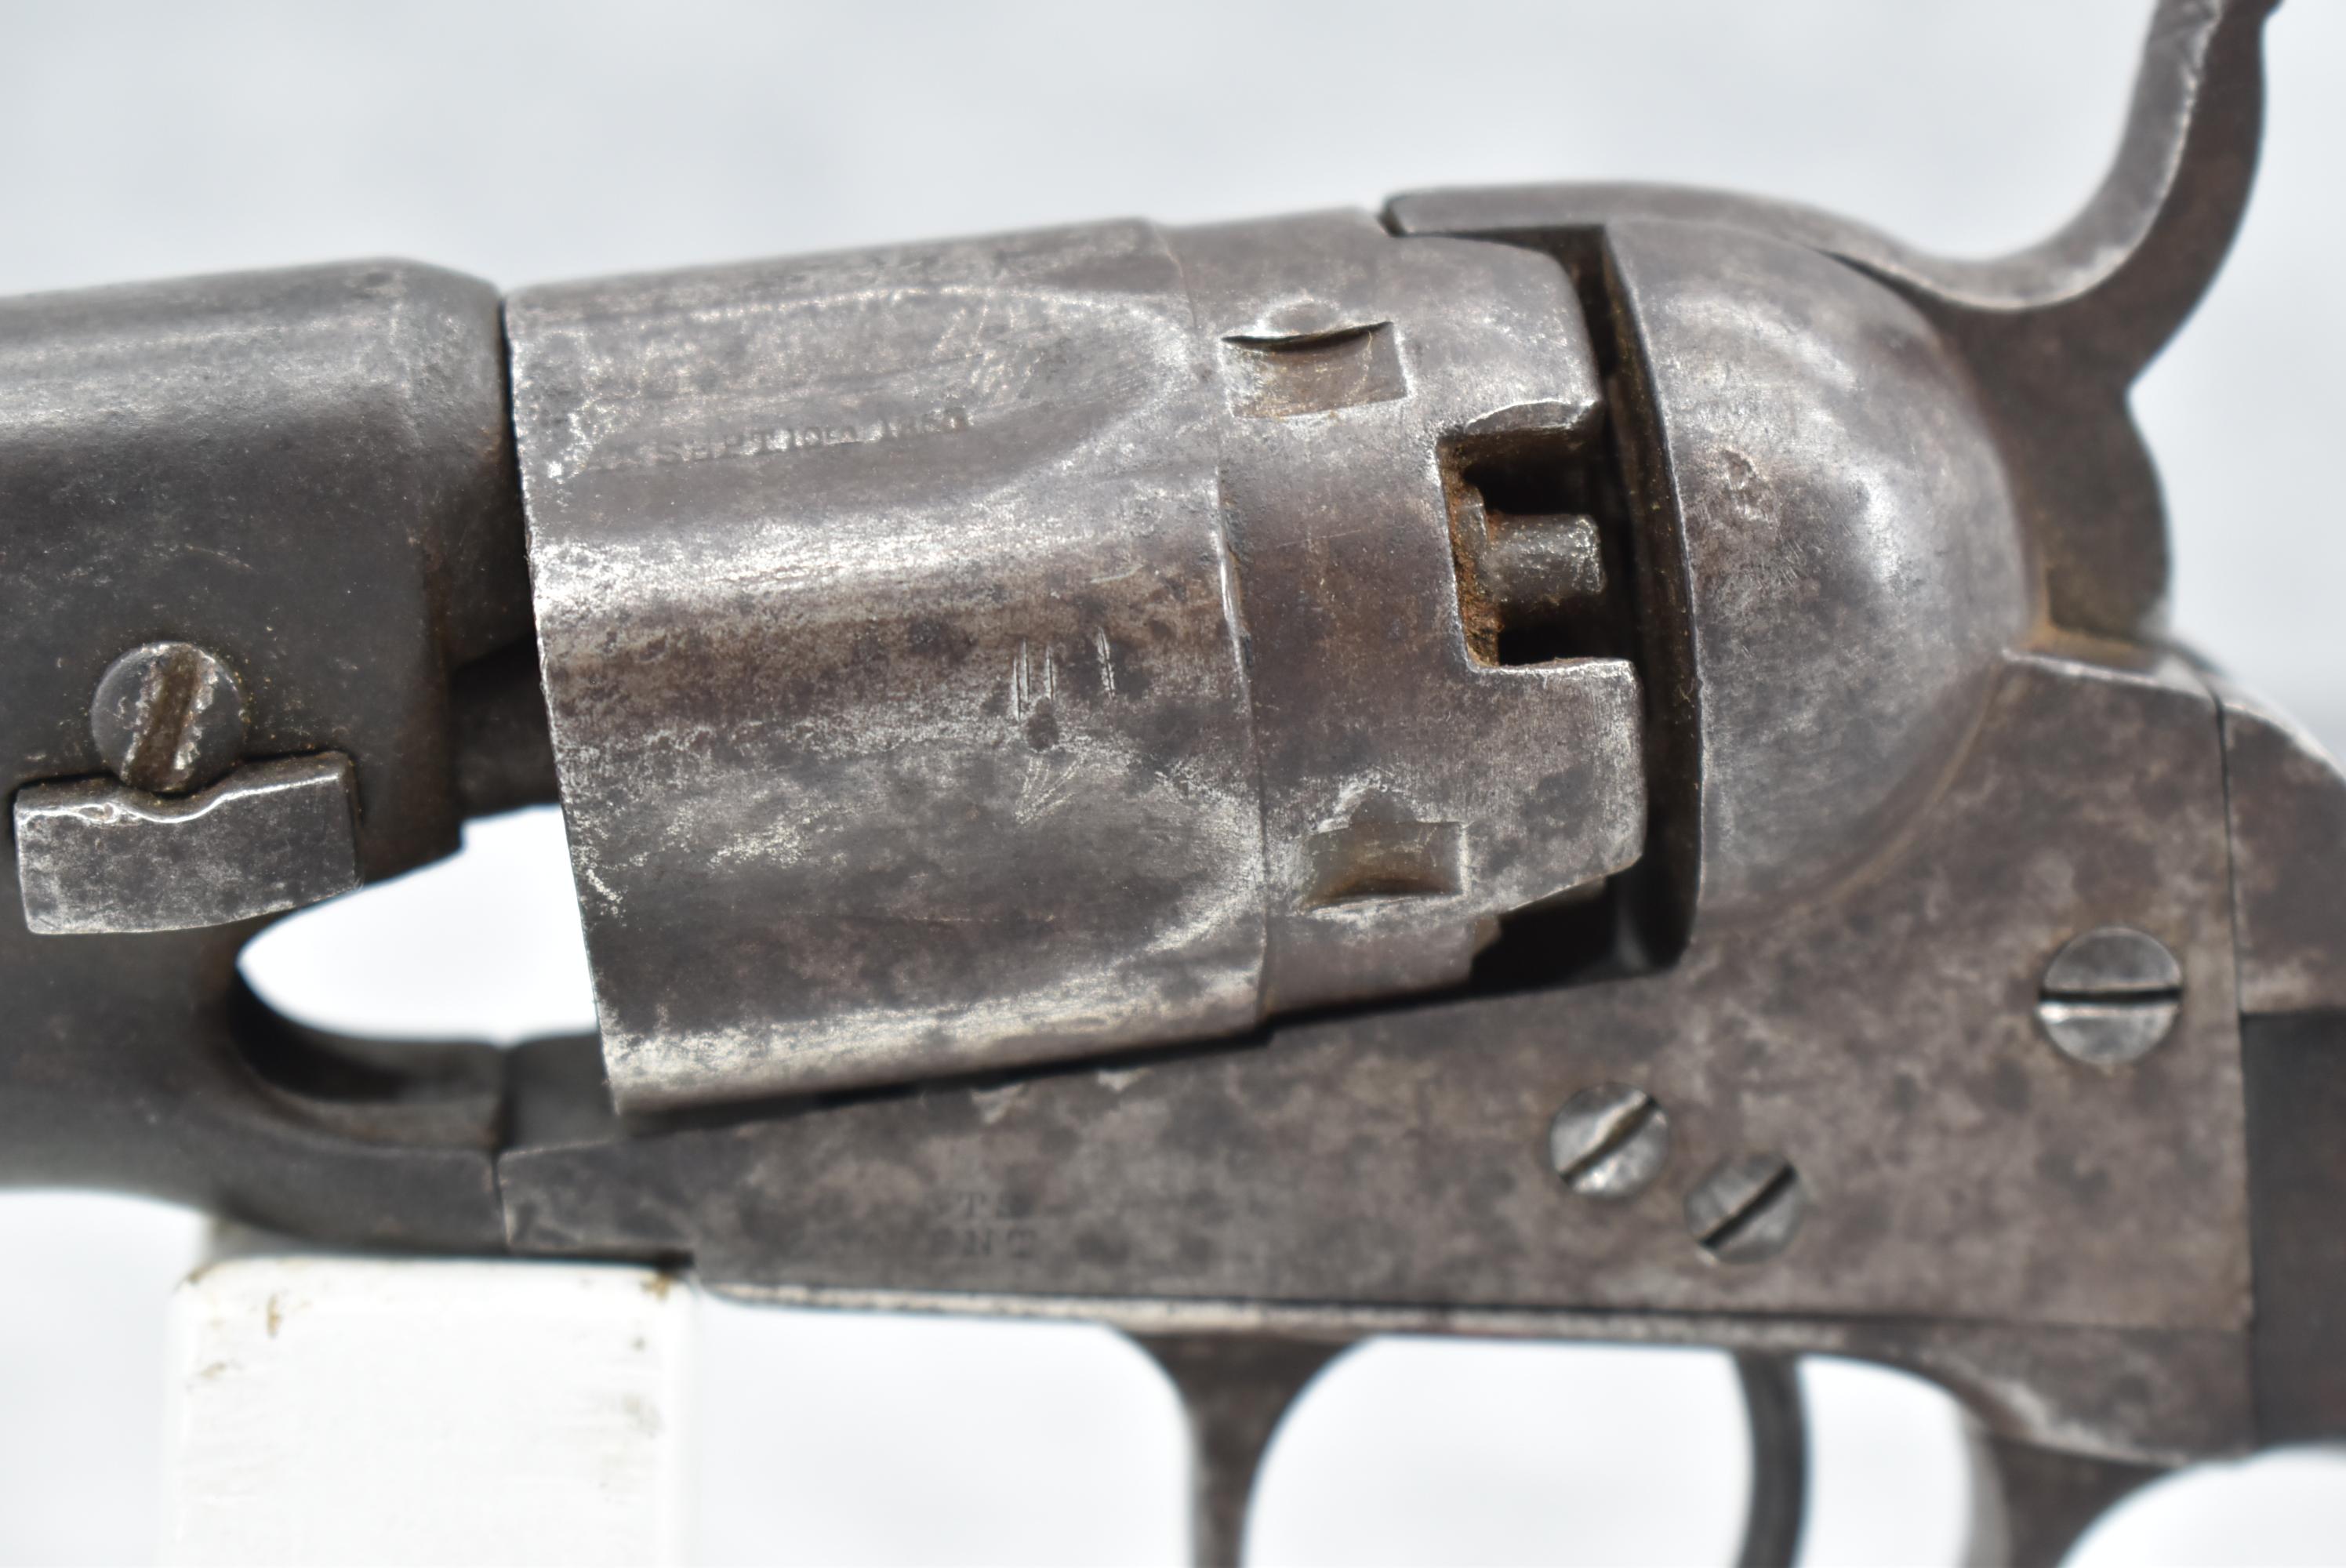 Colt – Mod. 1862 Police Revolver – 36 Cal. Percussion Revolver